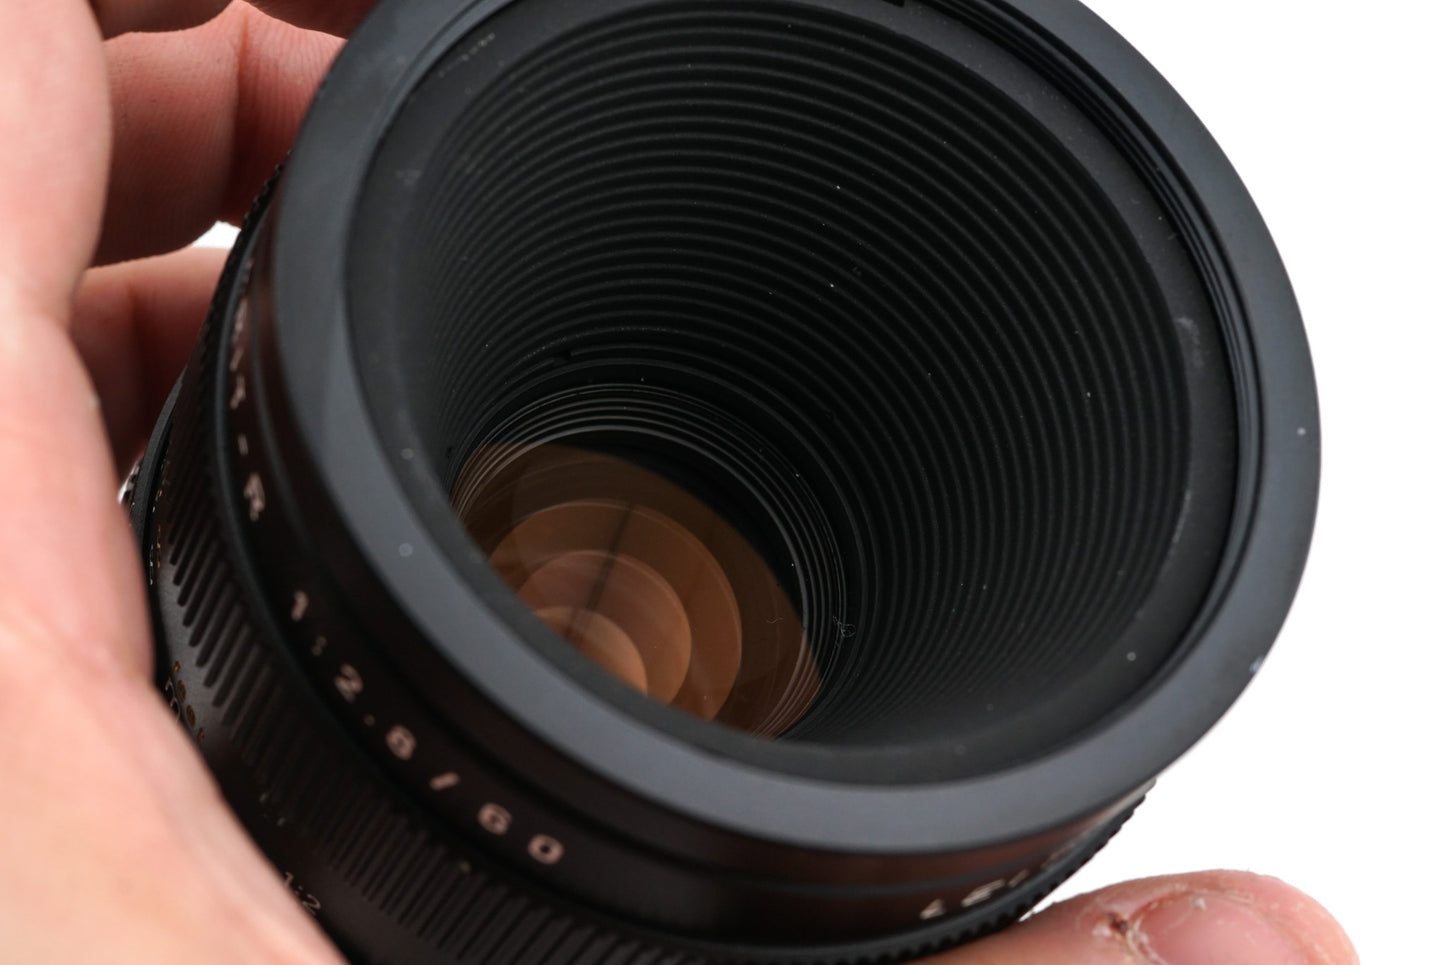 Leica 60mm f2.8 Macro-Elmarit-R (3-Cam / 11212)